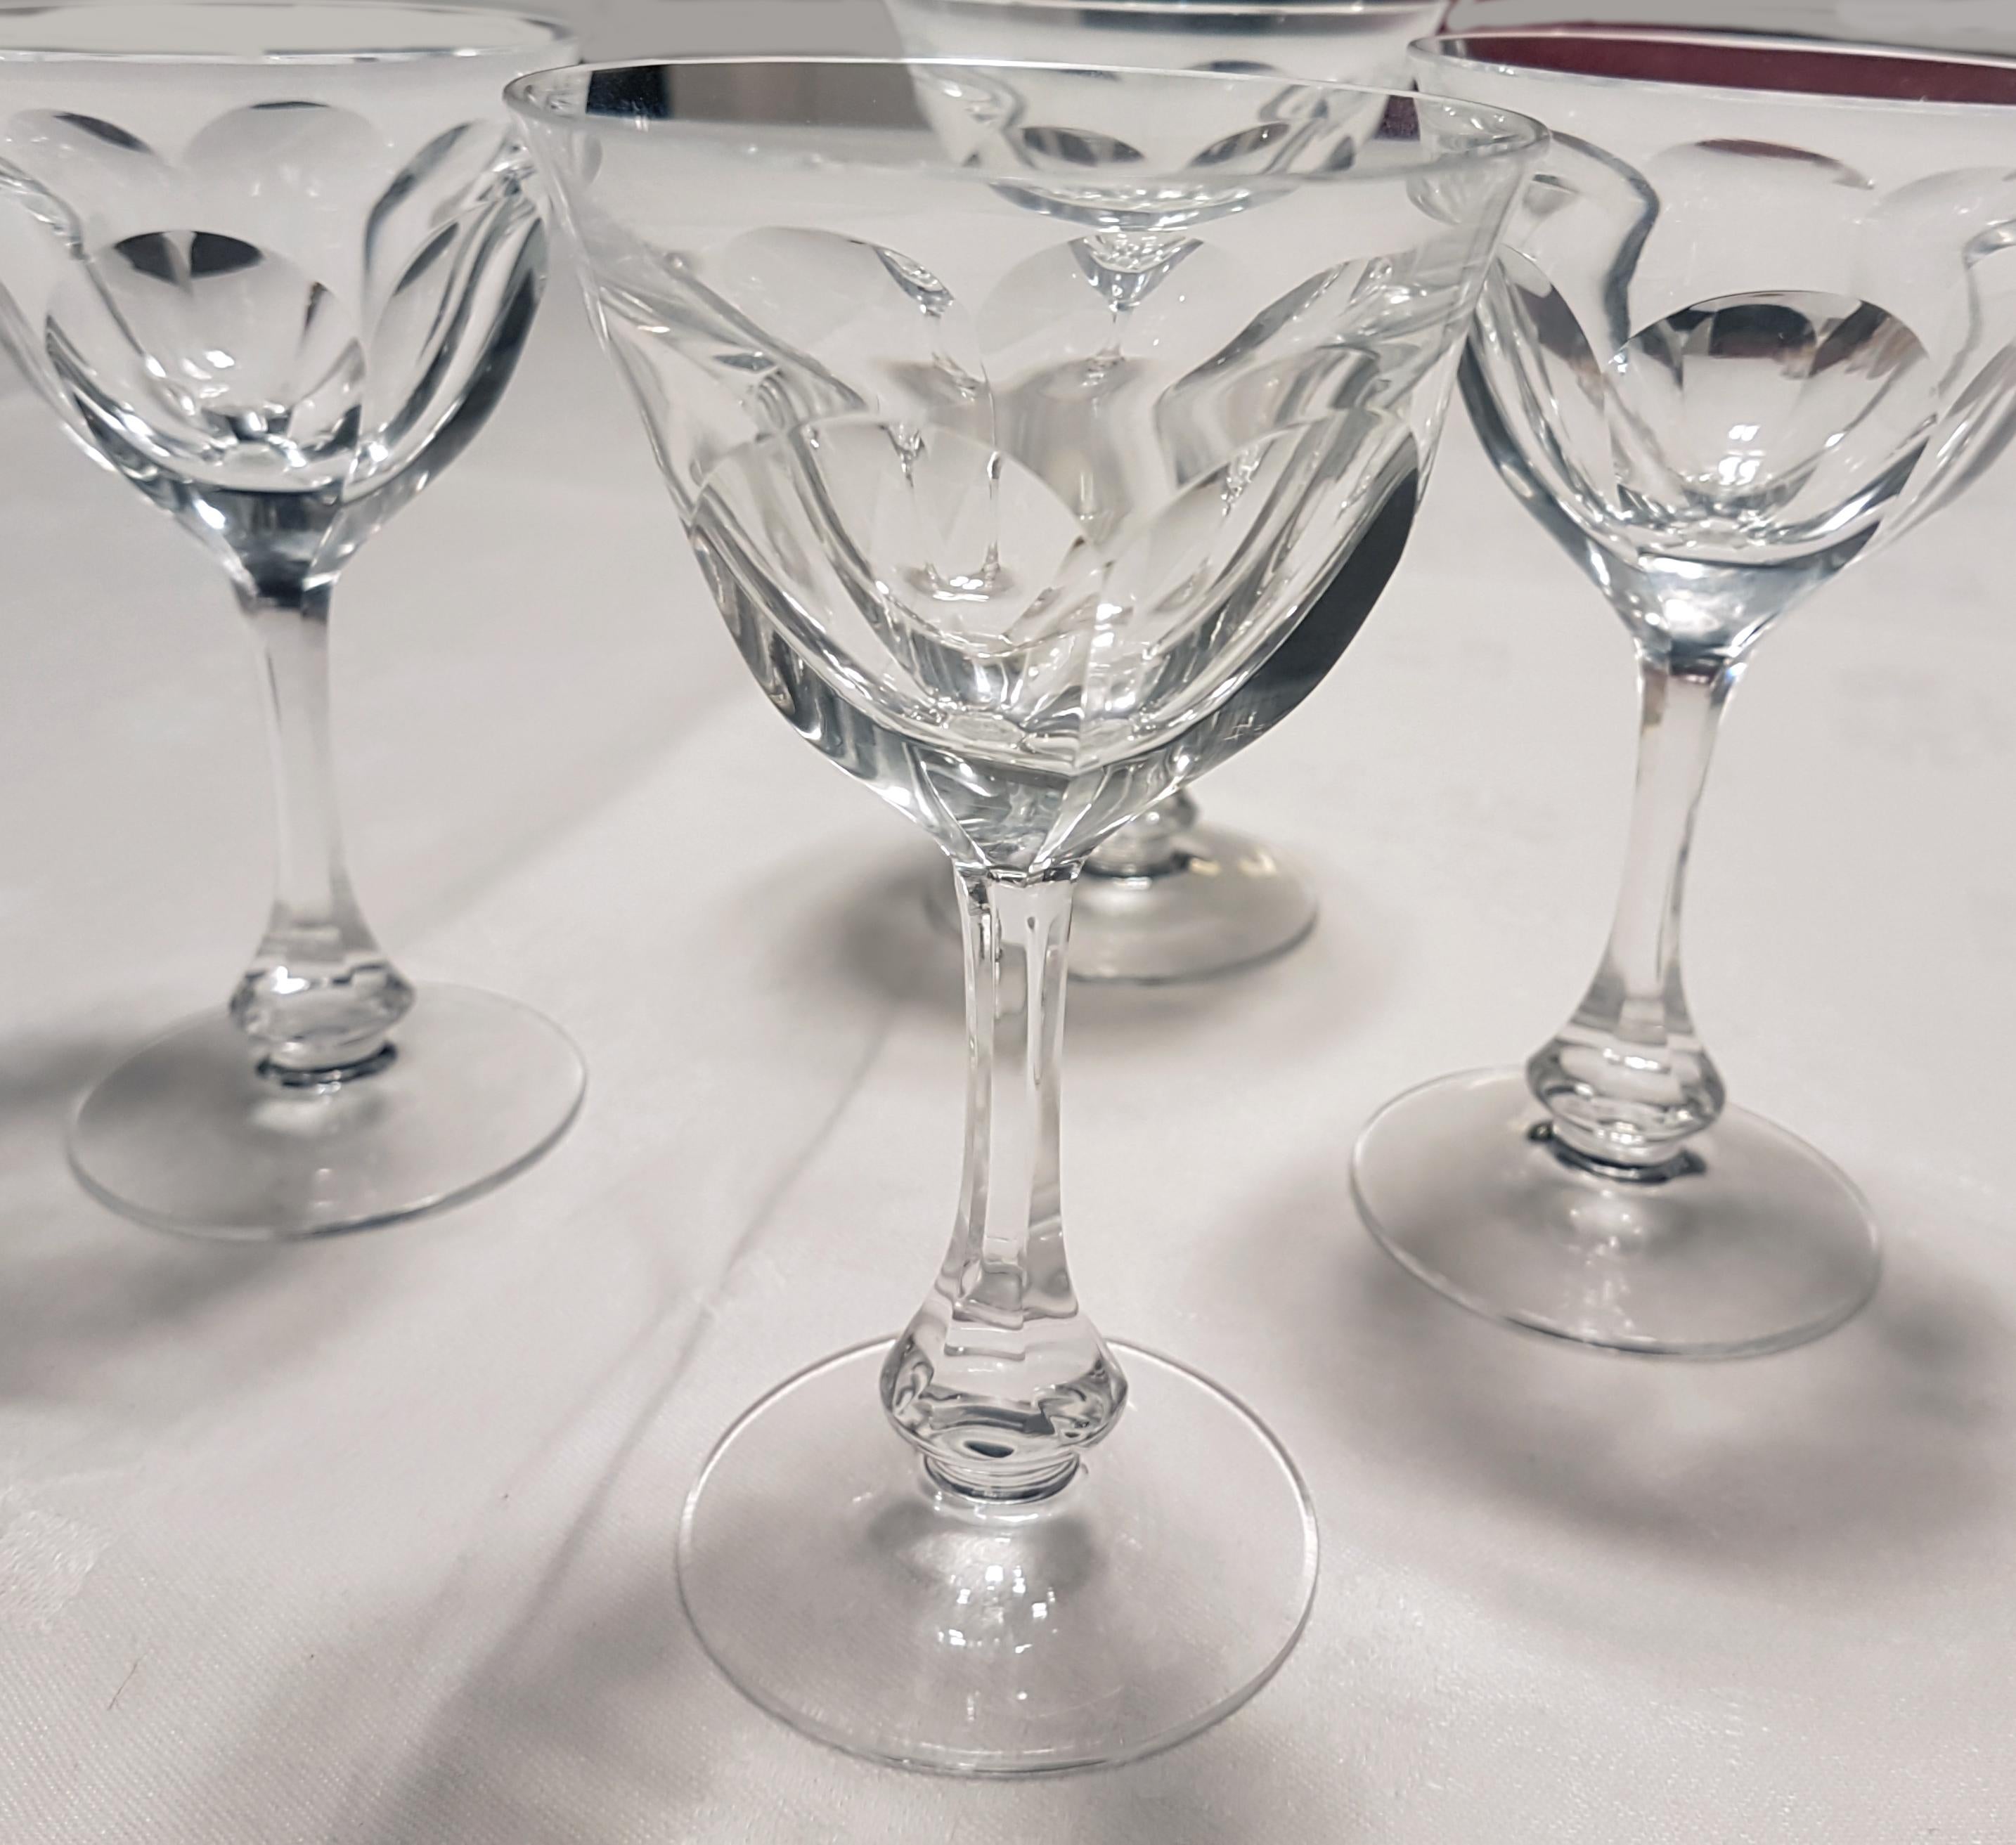 Dies sind 4 Likörgläser oder kleine Weingläser aus mundgeblasenem Kristall von Moser im beliebten Lady Hamilton Glasschliff.

Dieses Muster ist ein Beispiel für den 